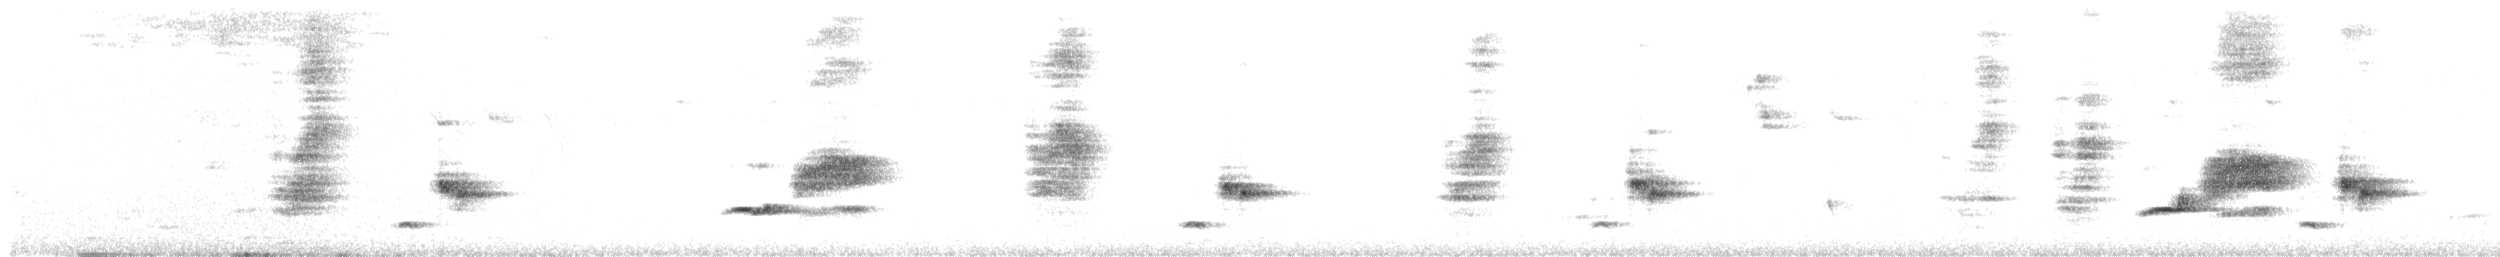 Ak Karınlı Drongo - ML264770571